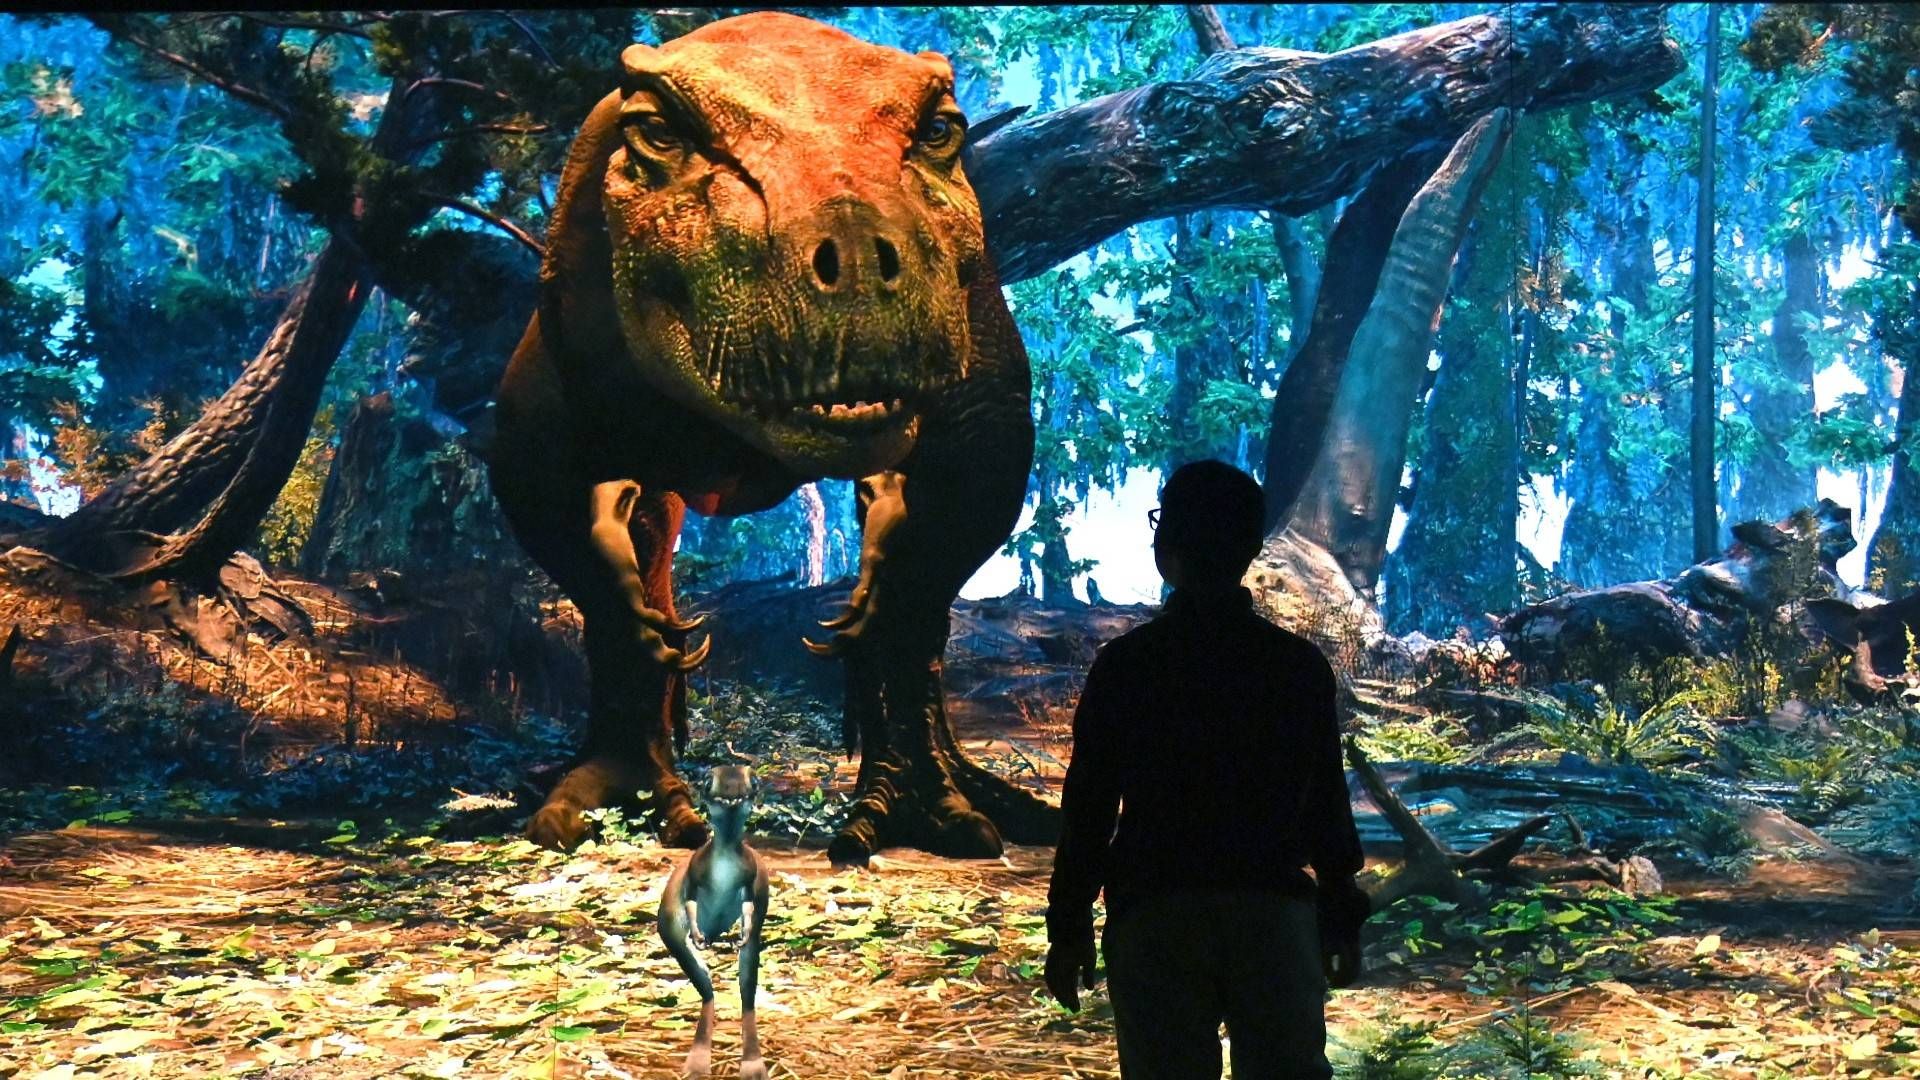 تی رکس تعاملی در موزه تاریخ طبیعی آمریکا / interactive T. rex 